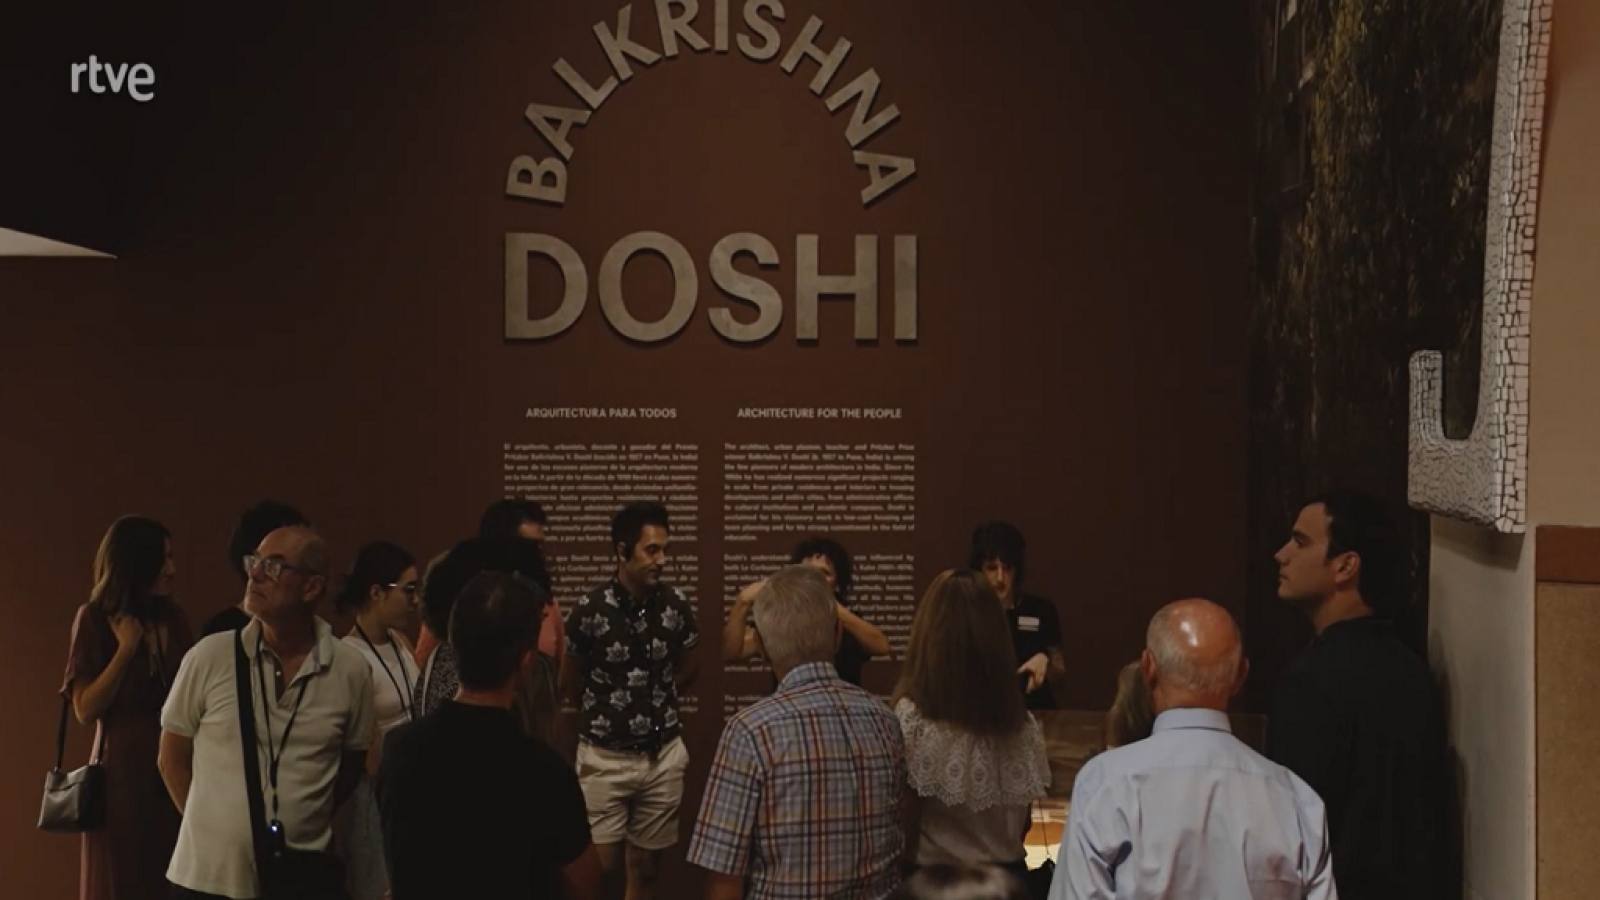 Accesibilidad: El museo ICO hace accesible la arquitectura de Doshi